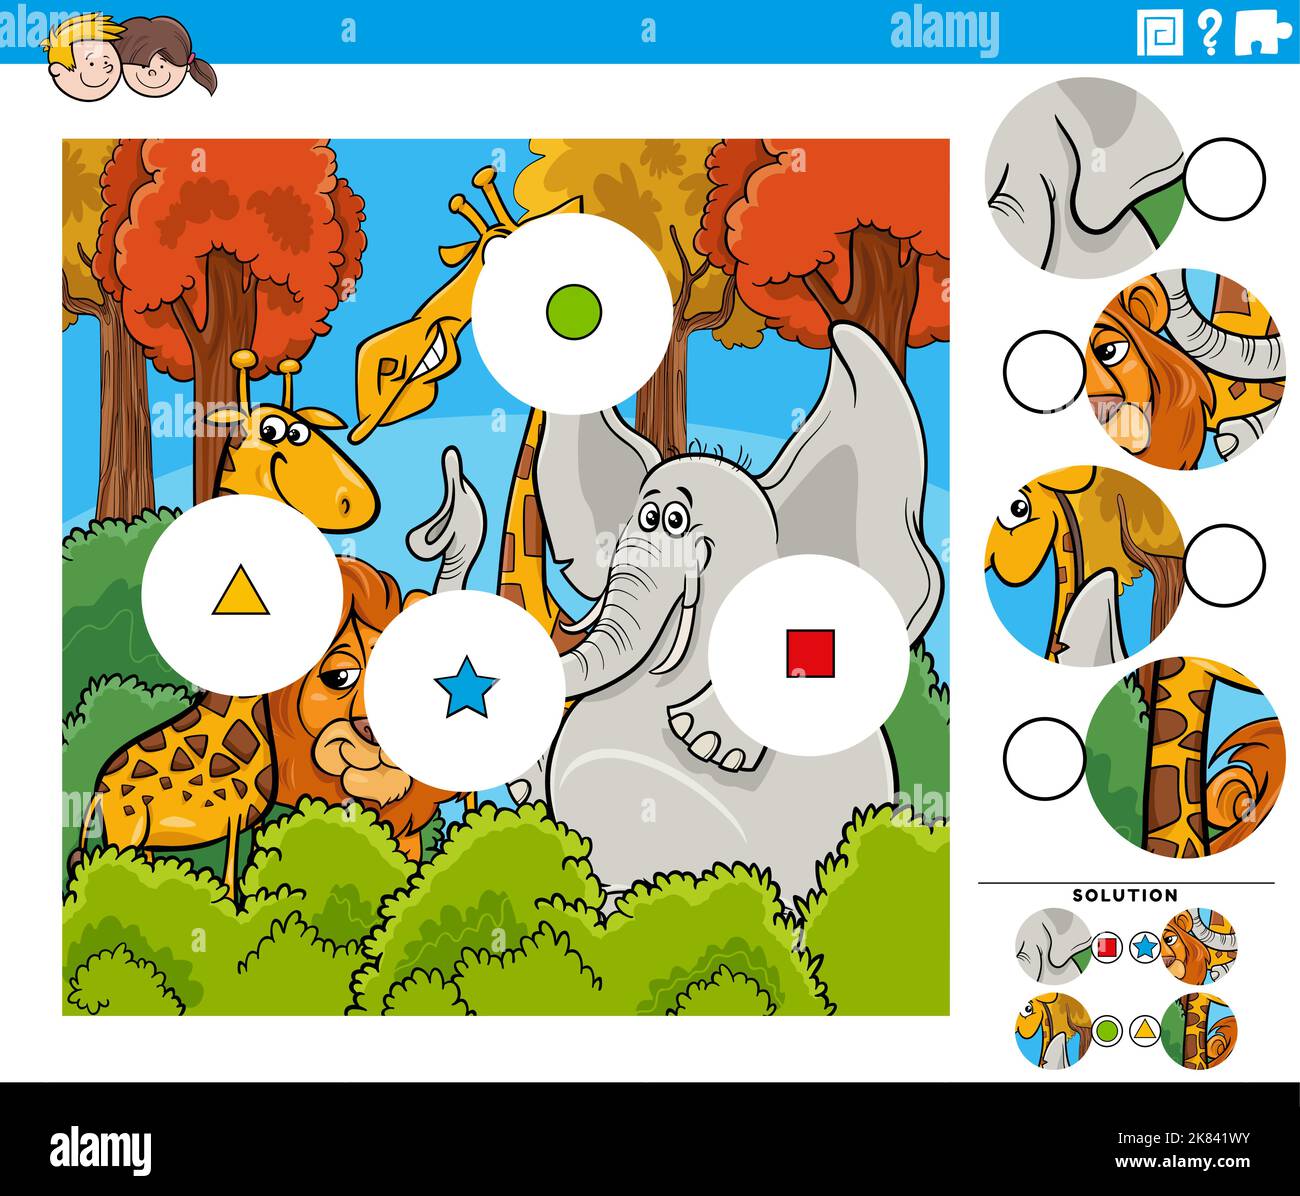 Dessin animé illustration de l'éducation match les pièces puzzle jeu de puzzle avec les personnages animaux sauvages drôles Illustration de Vecteur